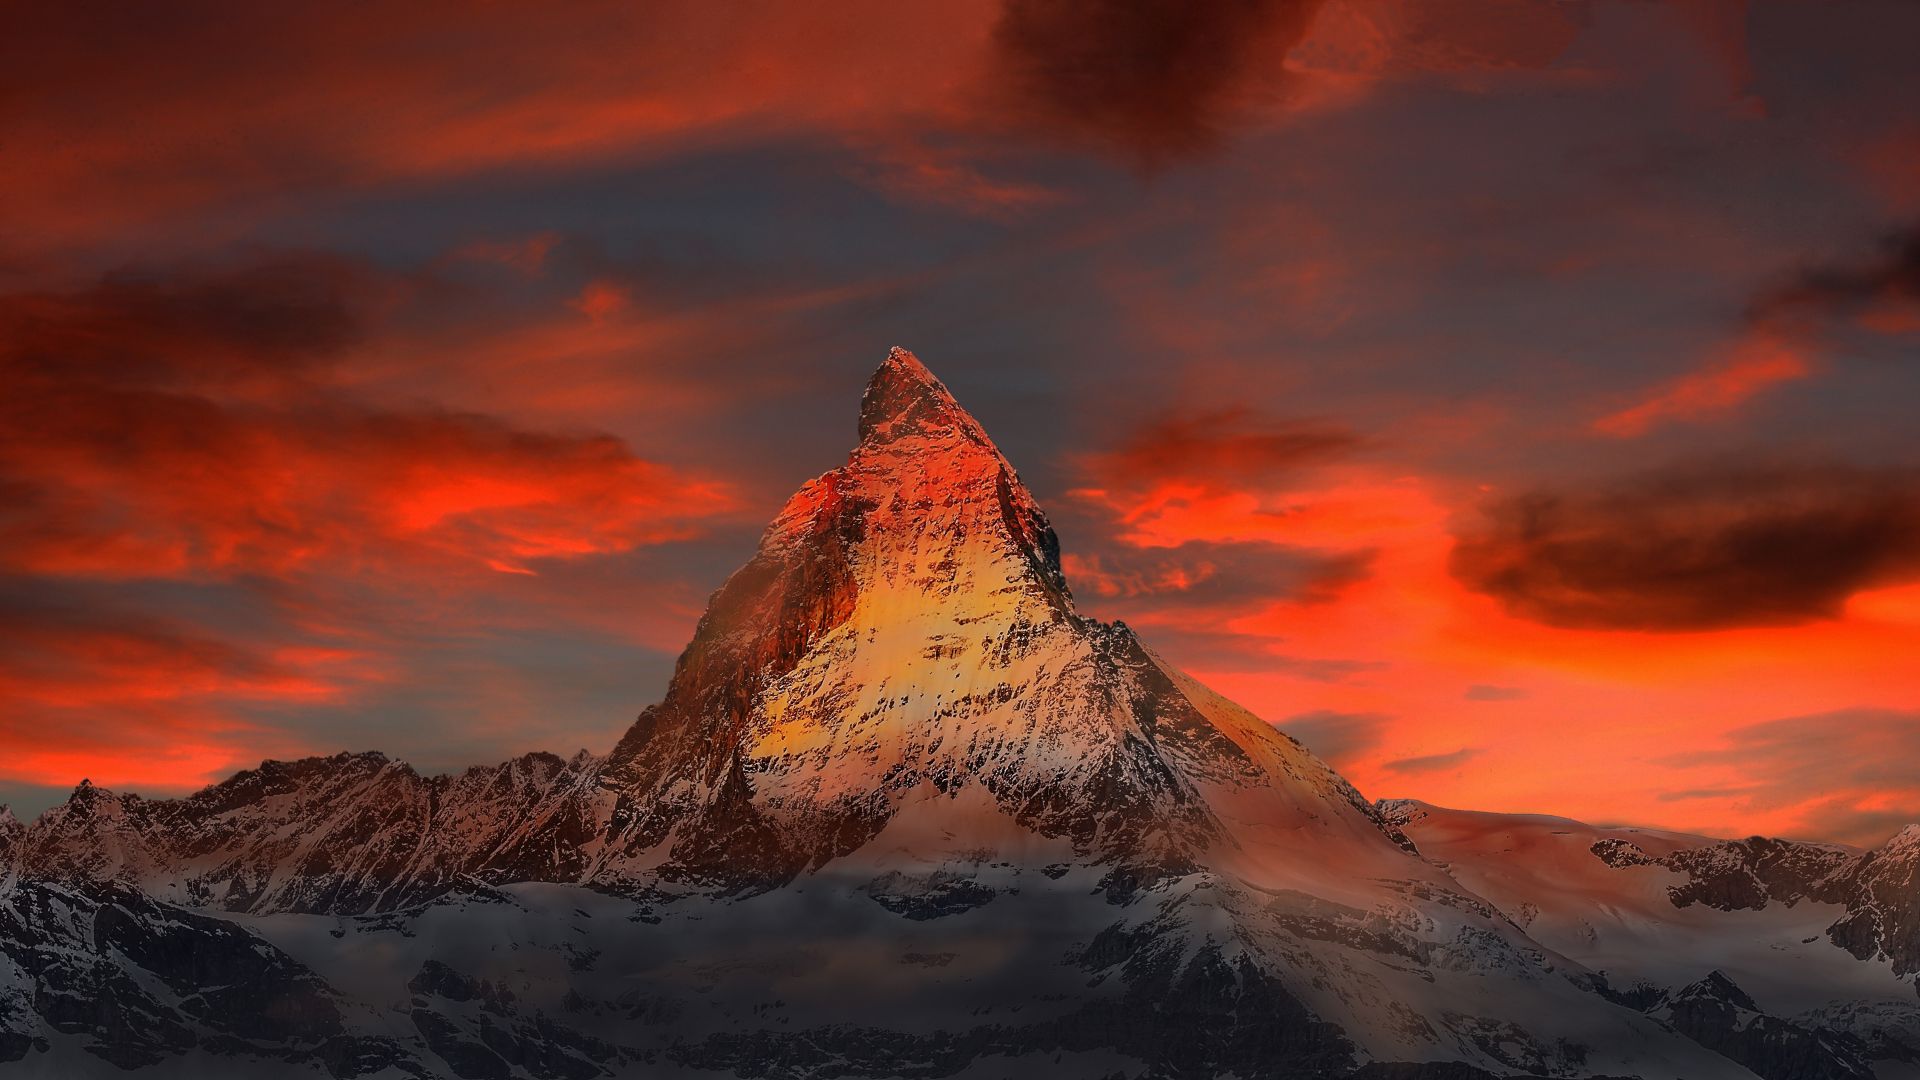 Desktop Wallpaper Matterhorn Sunset Mountains Clouds 5k Hd Image